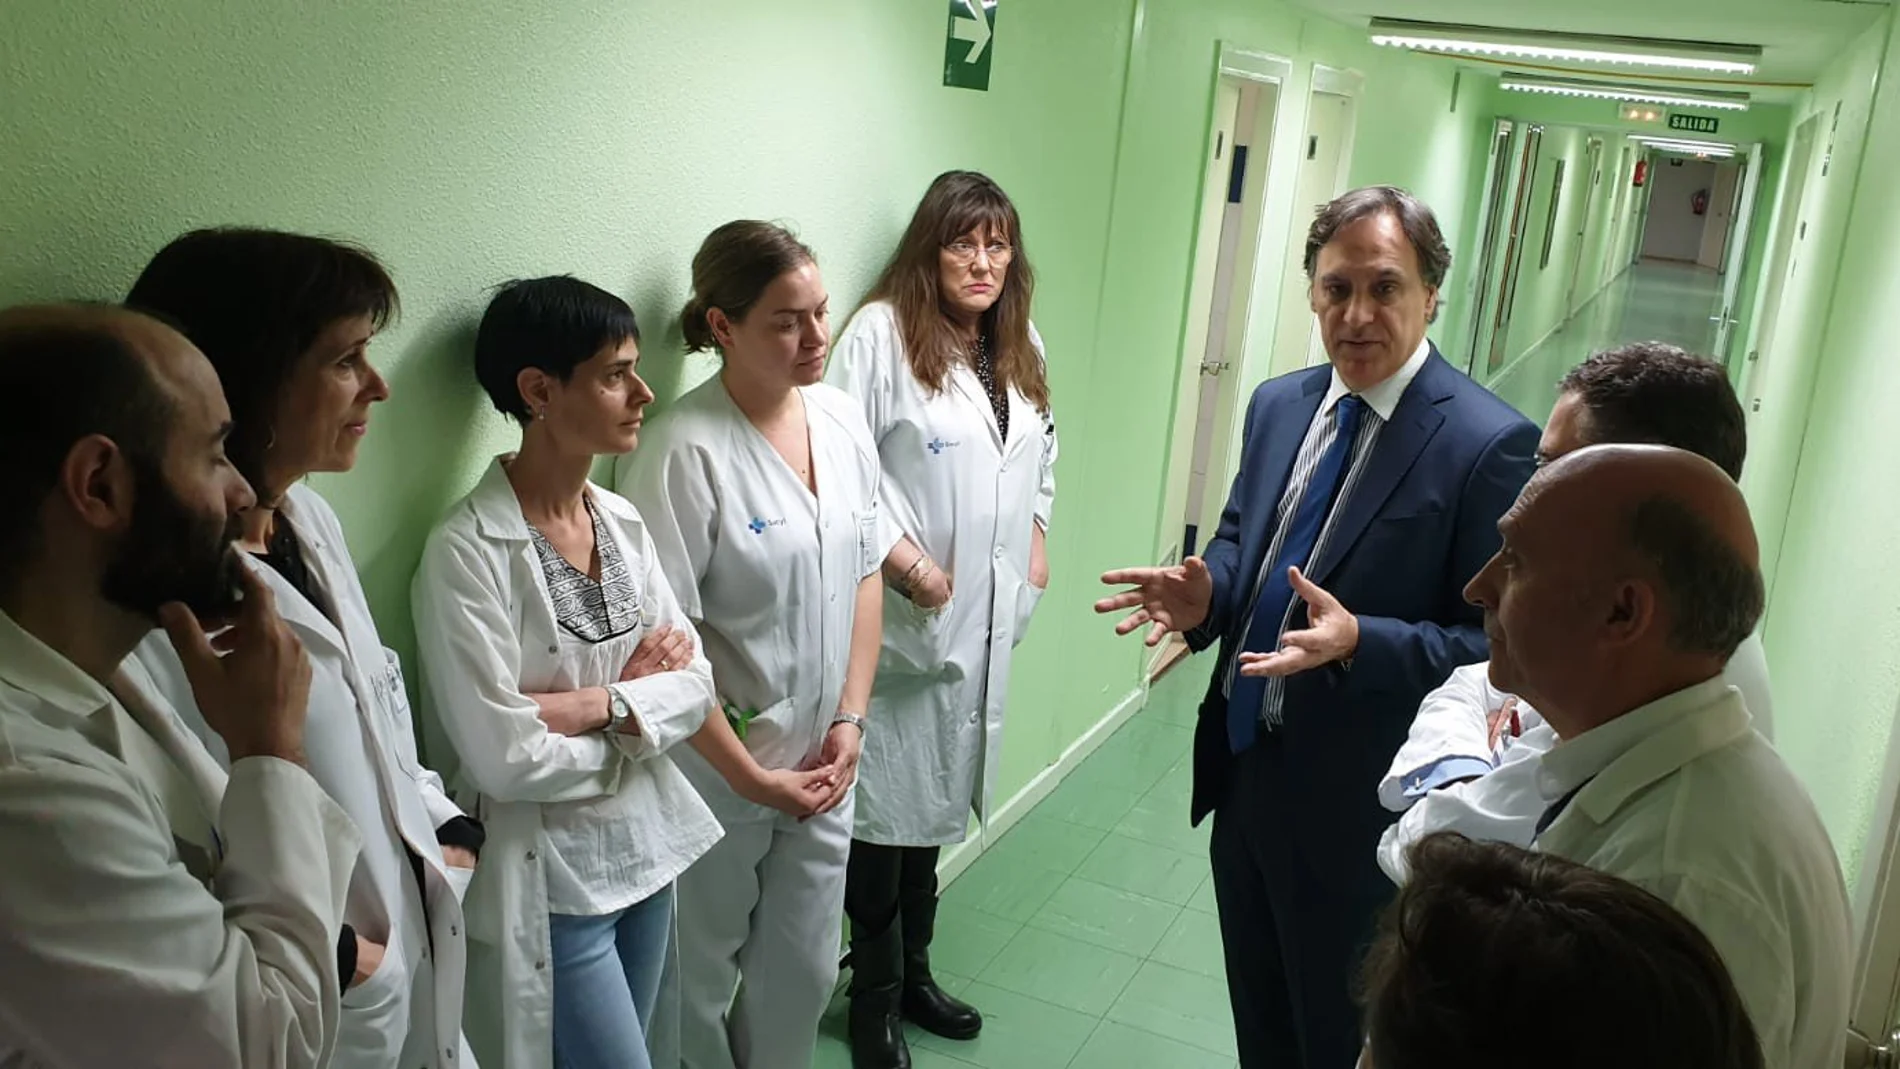 El alcalde Carlos García Carbayo visita el Servicio de Psiquiatría del Hospital salmantino